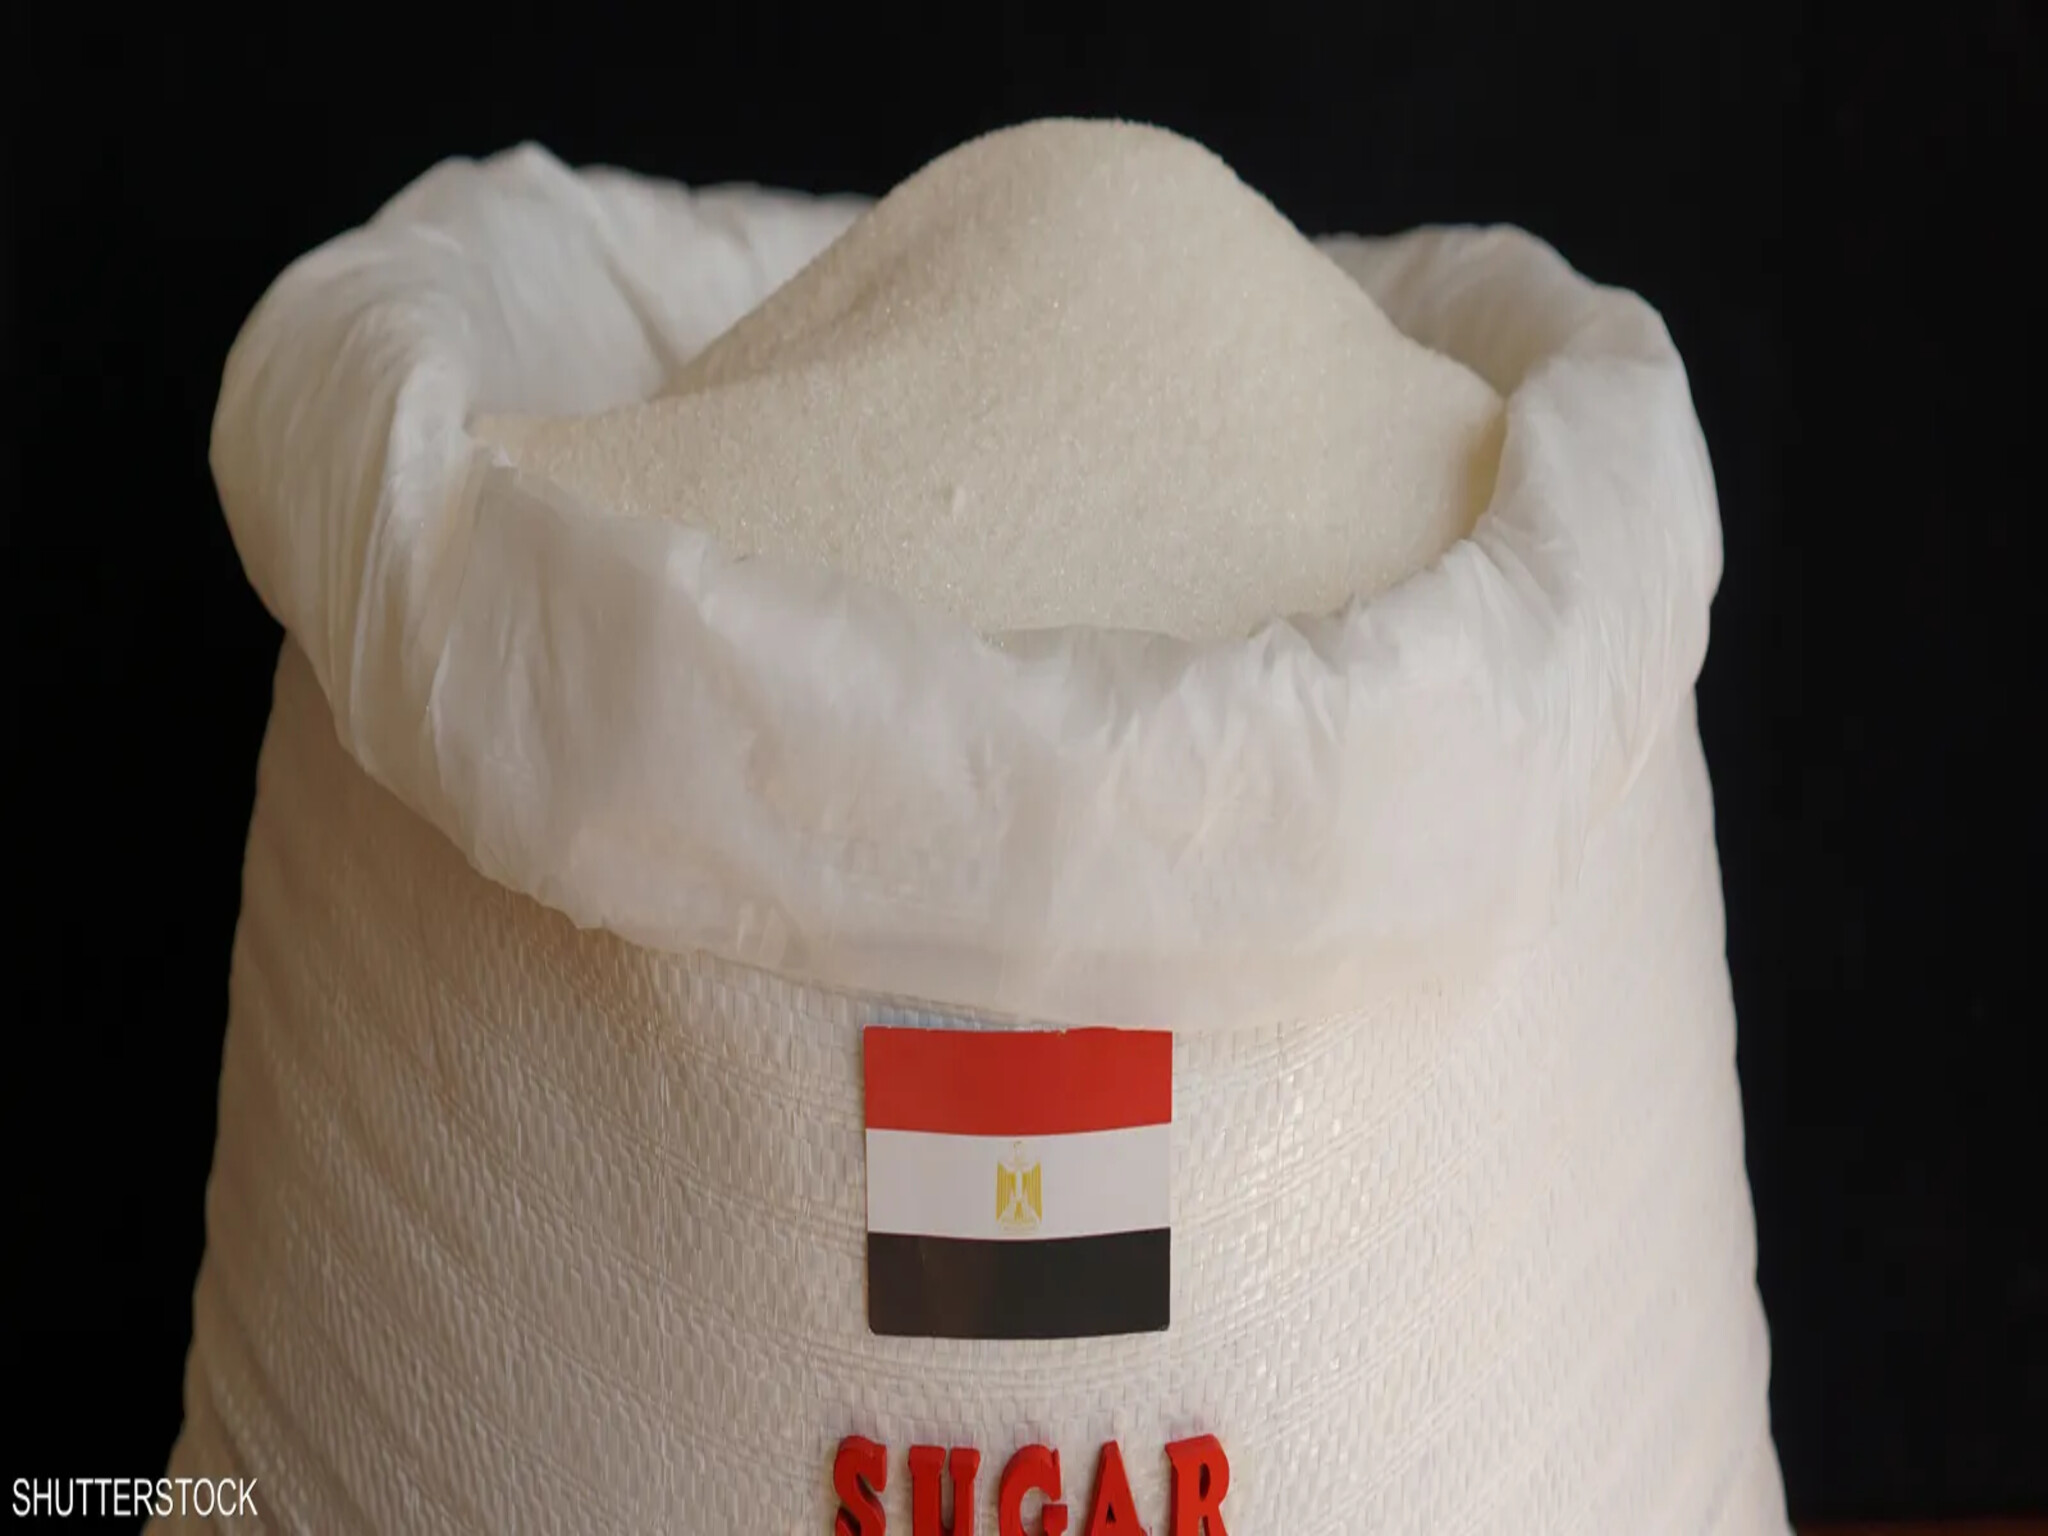 أزمة سعر السكر...مصر تهدد التجار بالتسعير الجبري لإعادة ضبط الأسعار